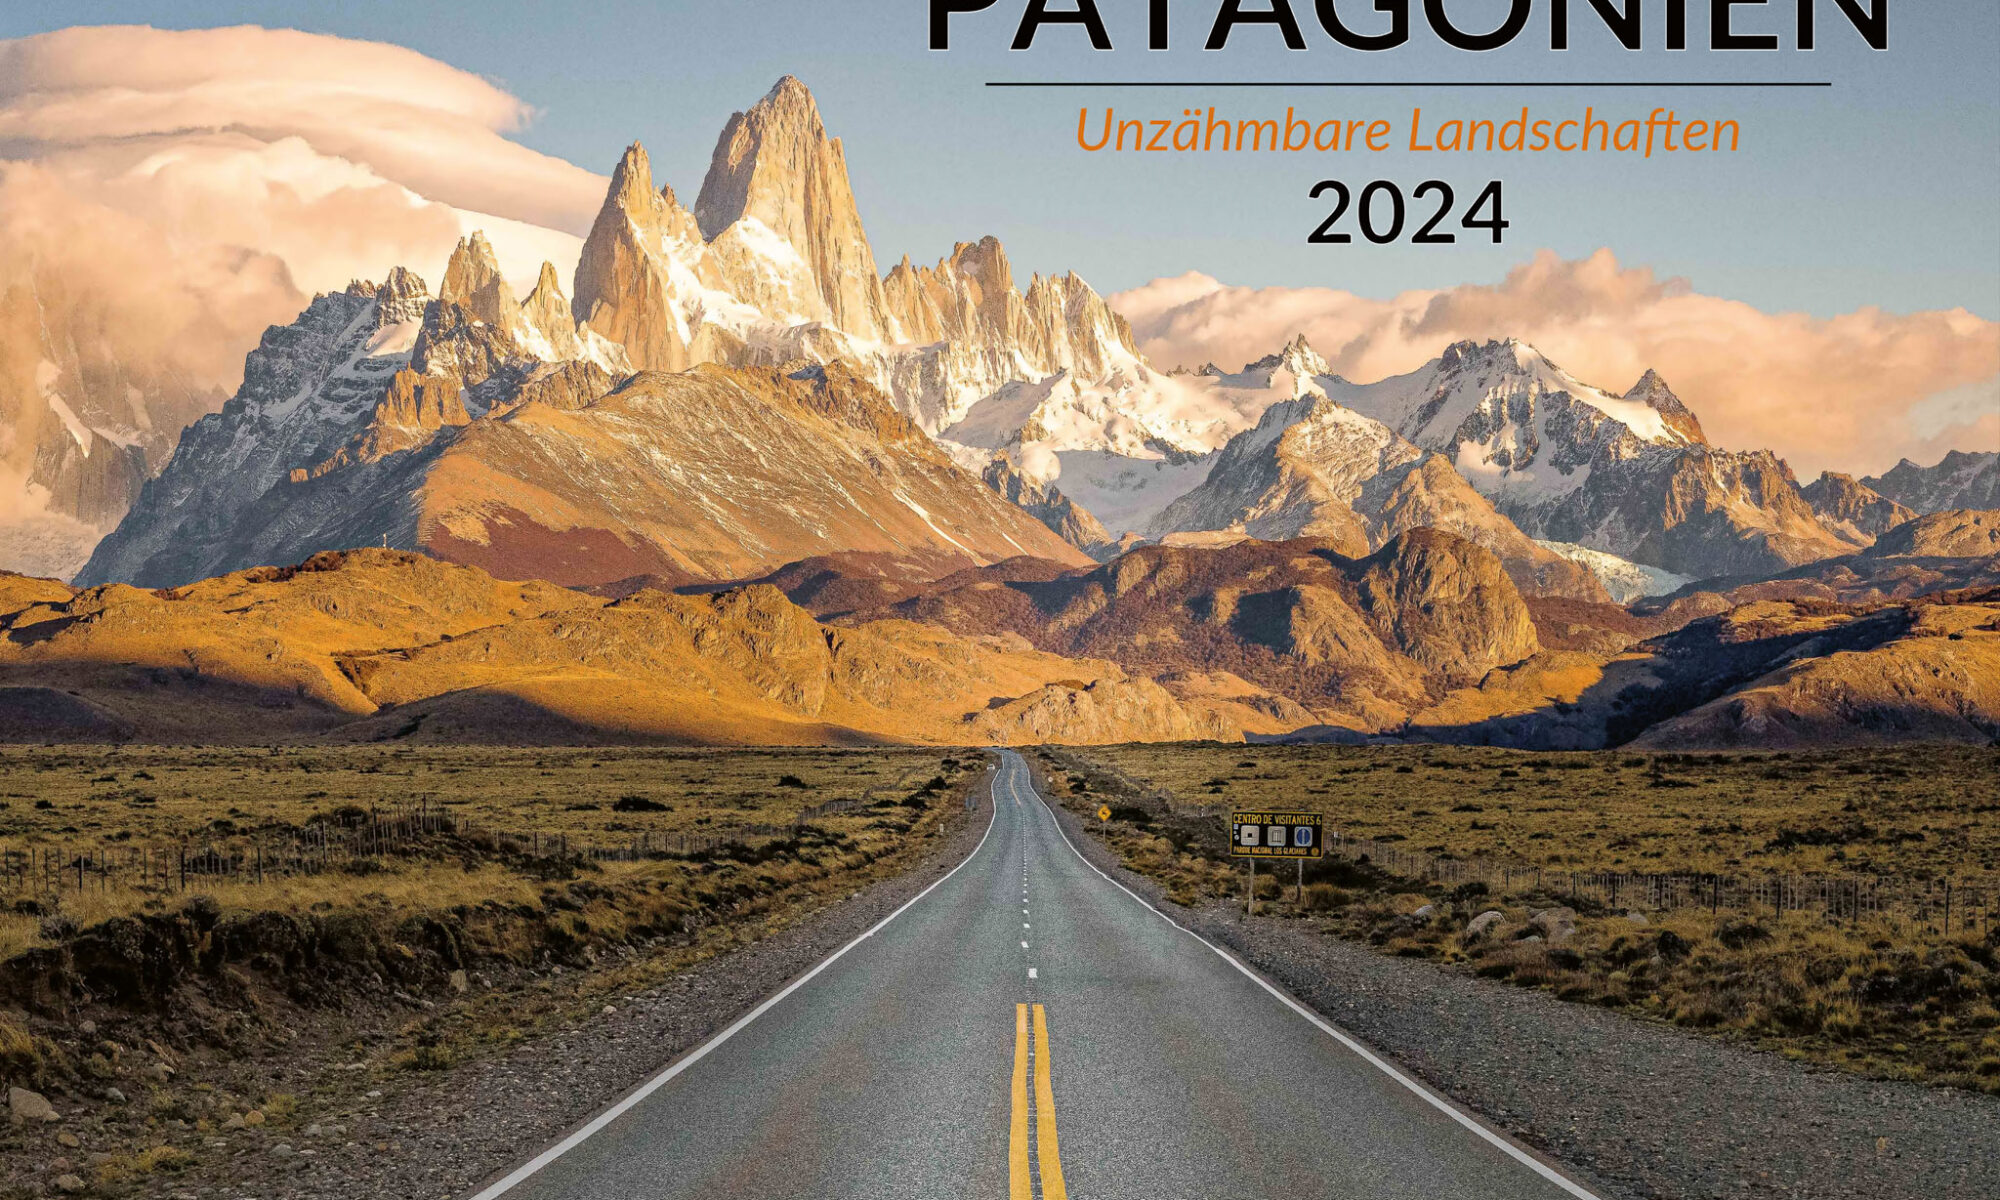 Patagonien Kalender 2024